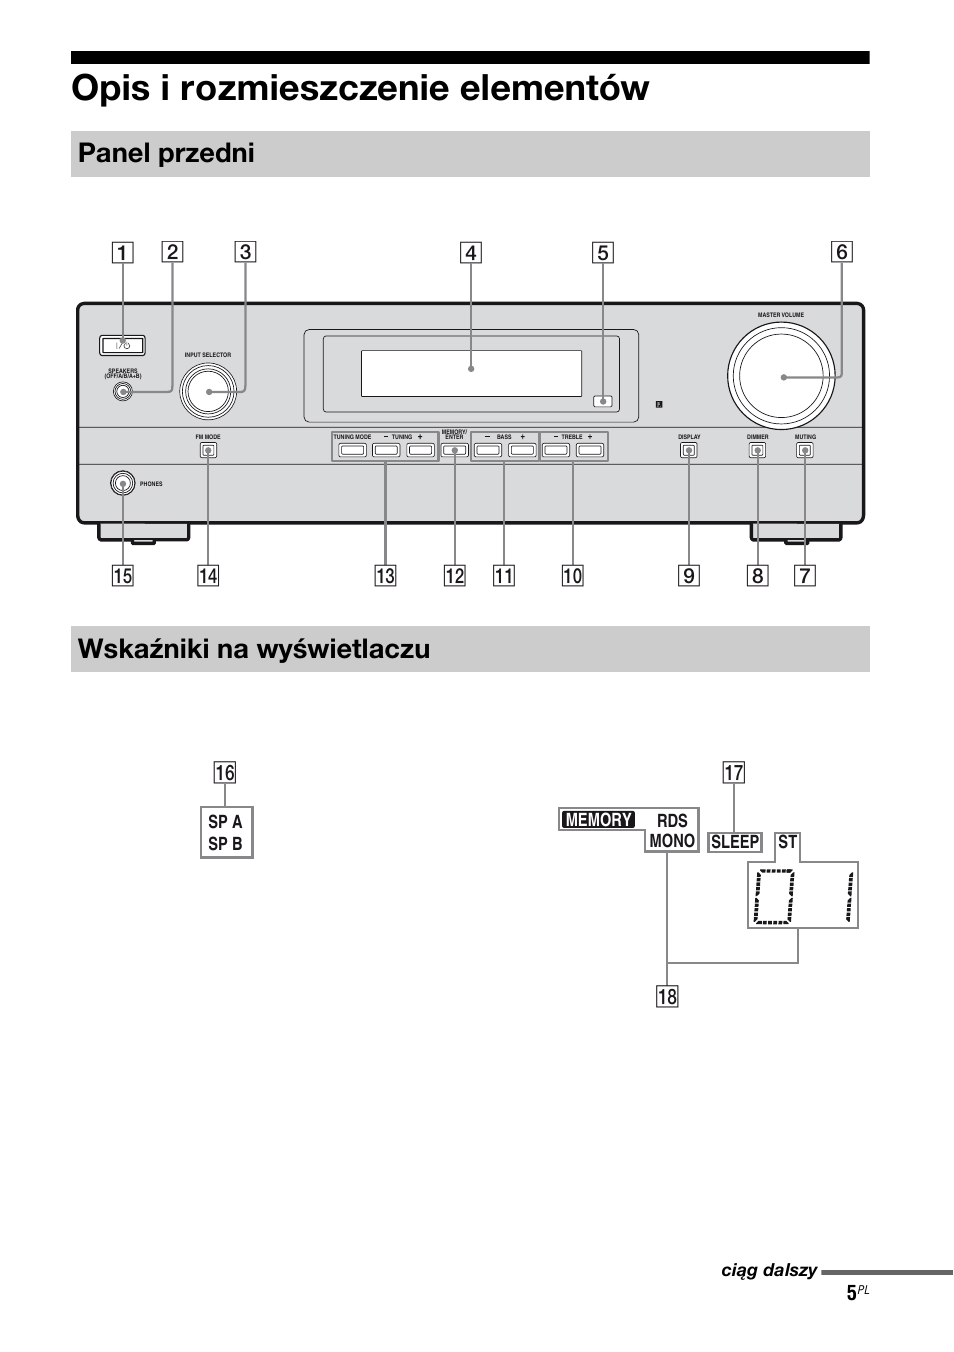 Opis i rozmieszczenie elementów, Panel przedni wskaźniki na wyświetlaczu, Qh qj qk | Sony STR-DH100 Manuale d'uso | Pagina 41 / 76